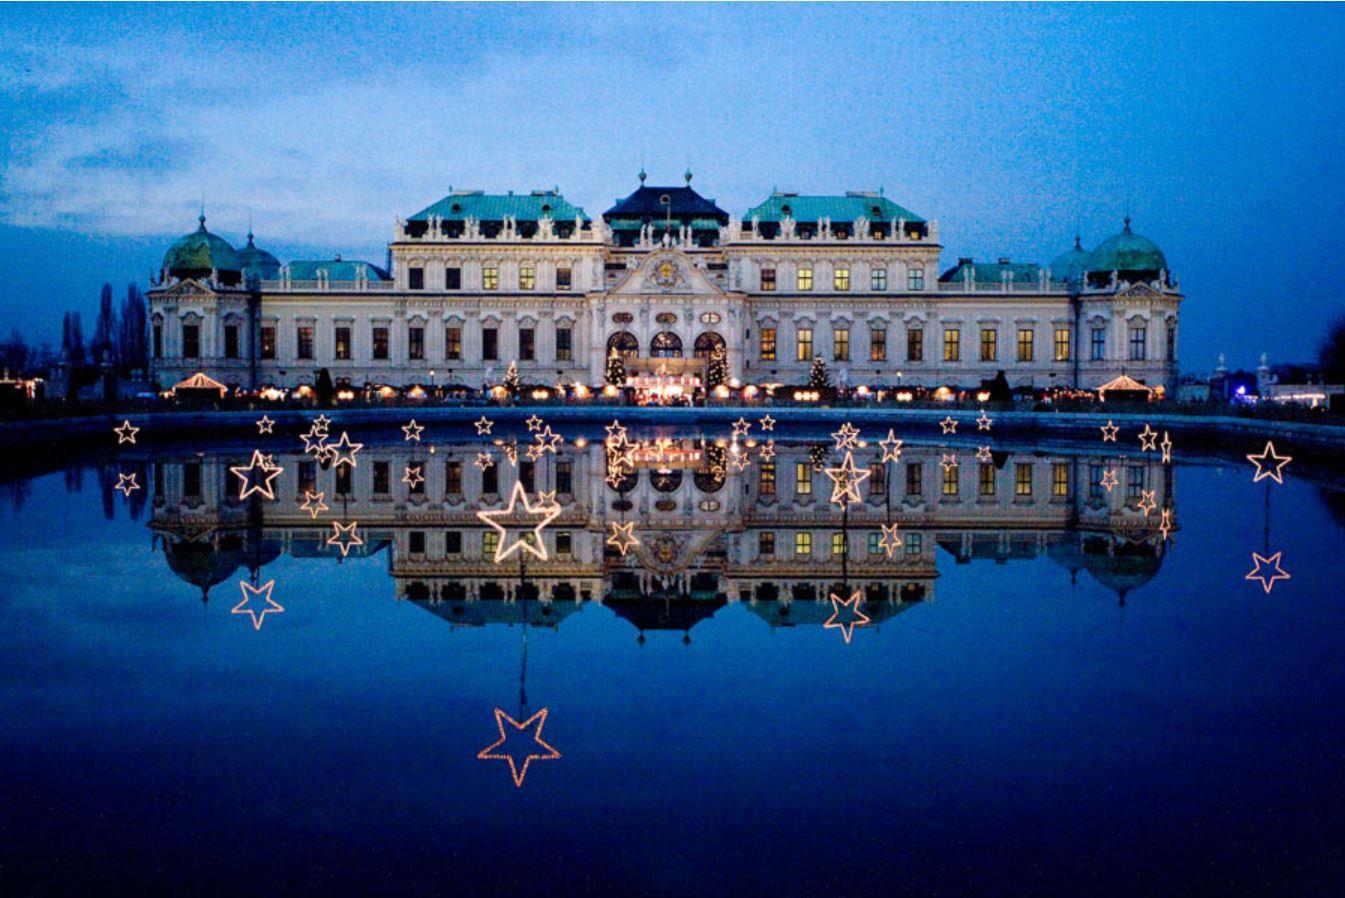 Schloss Belvedere Market, Vienna/Viena